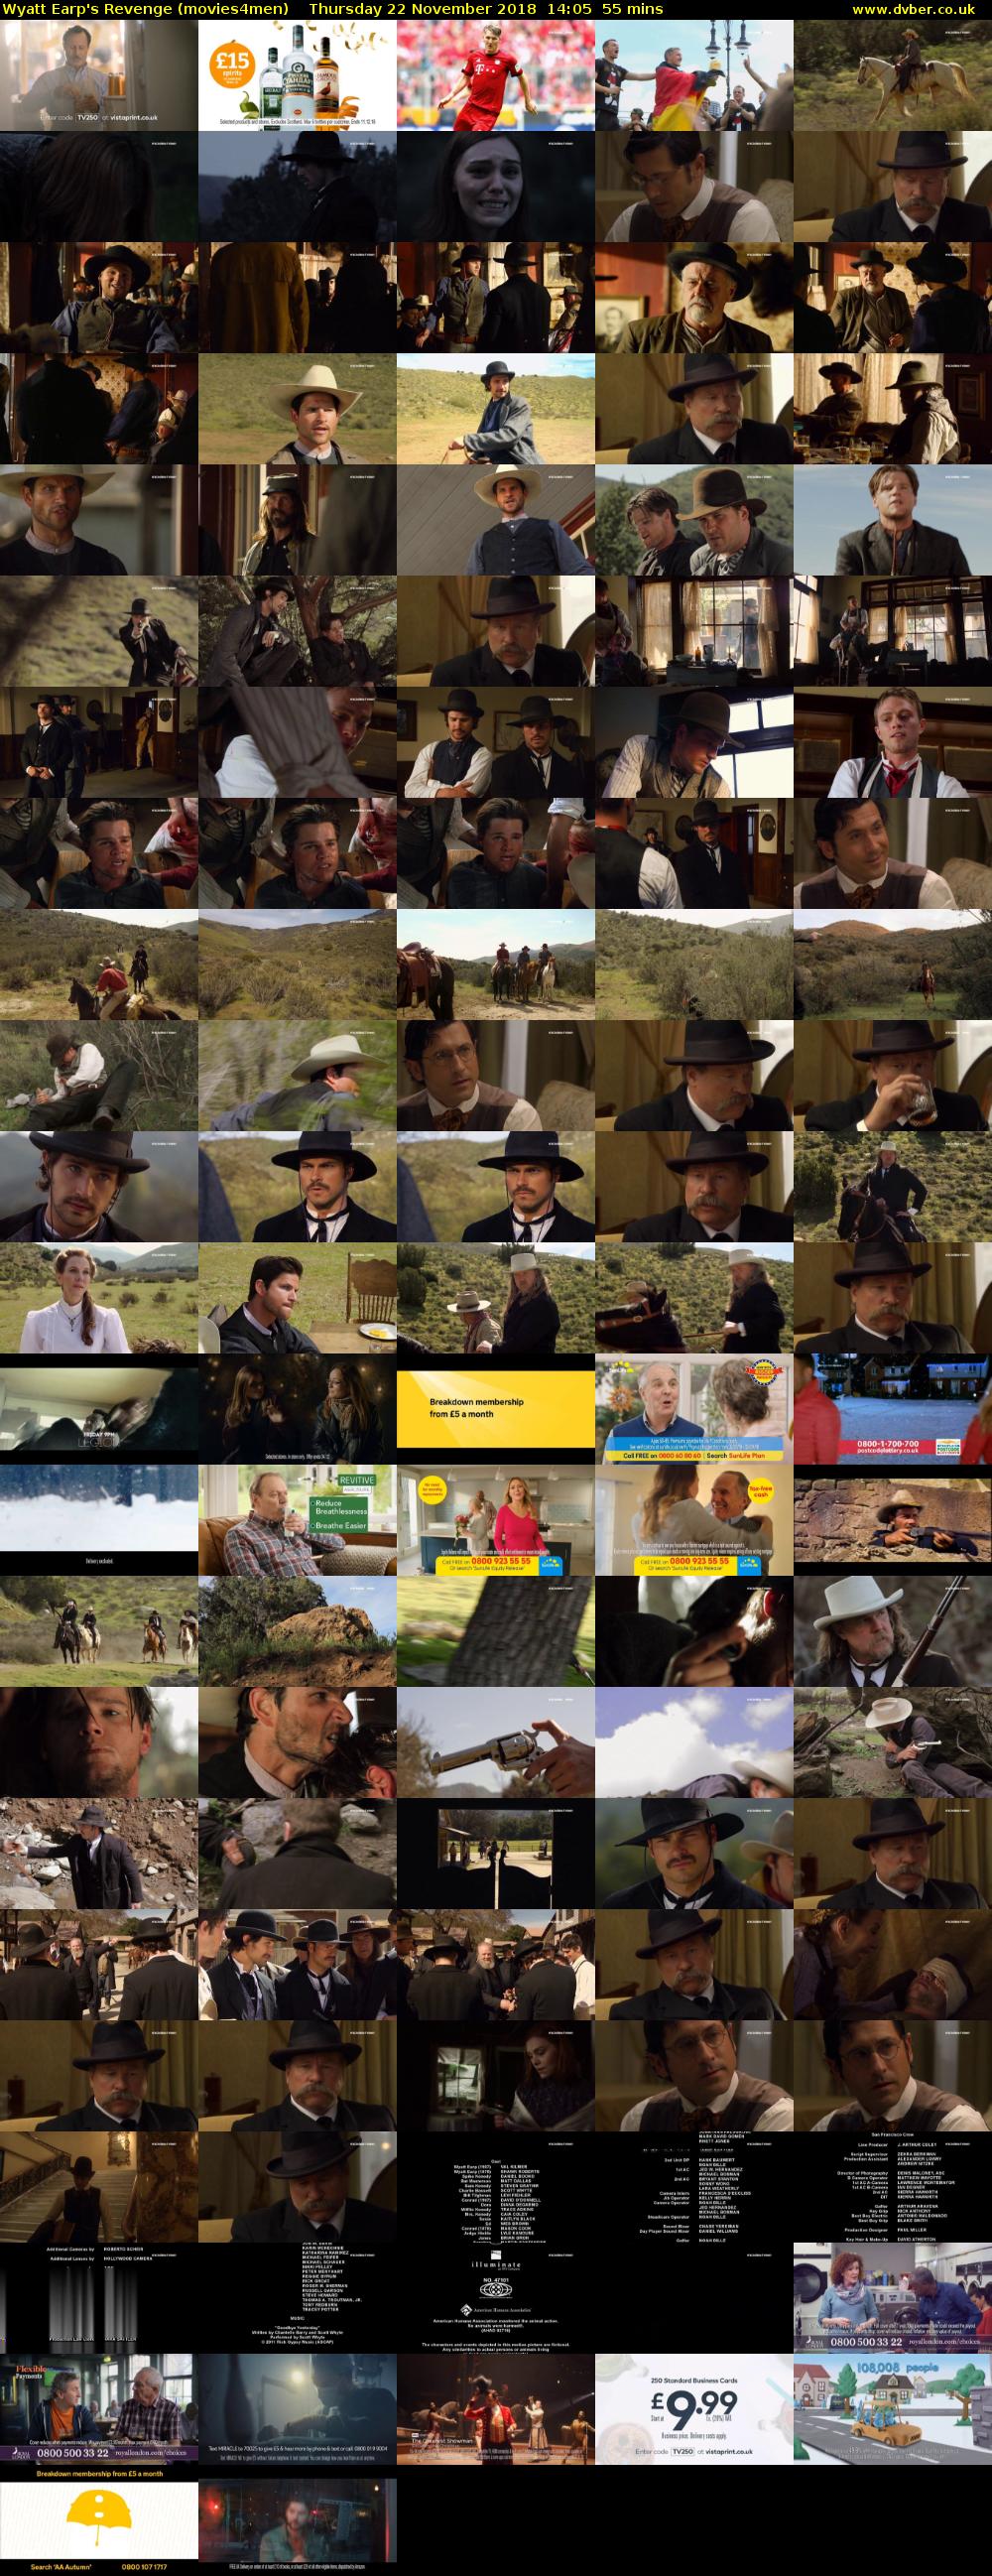 Wyatt Earp's Revenge (movies4men) Thursday 22 November 2018 14:05 - 15:00